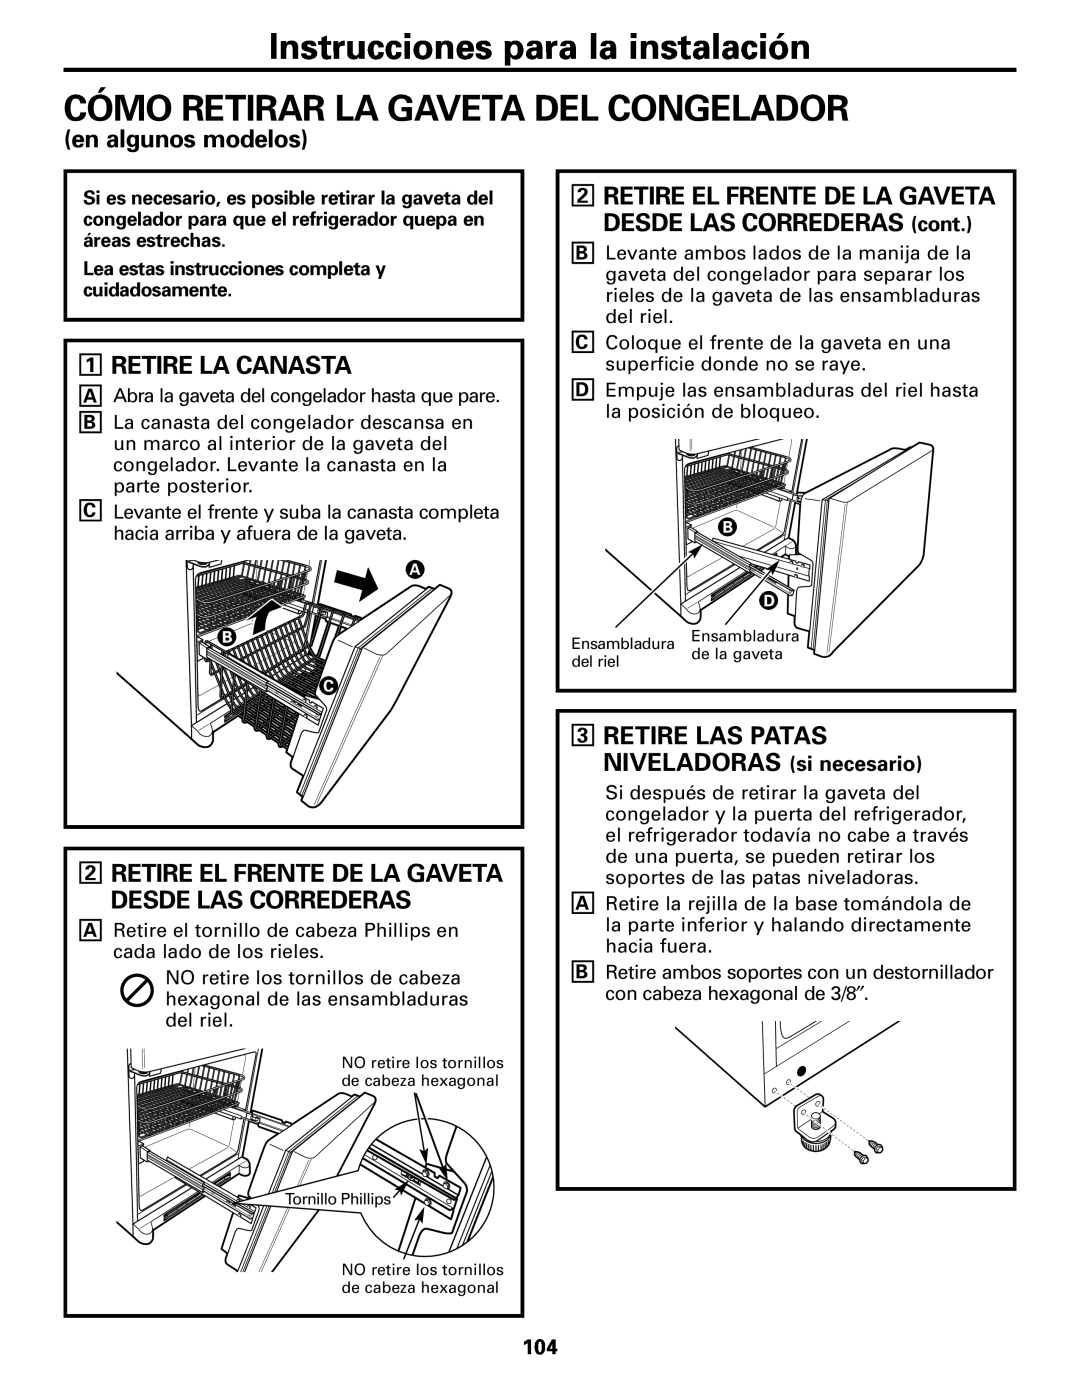 GE Monogram 22, 20 operating instructions Cómo Retirar La Gaveta Del Congelador, en algunos modelos, Retire La Canasta 